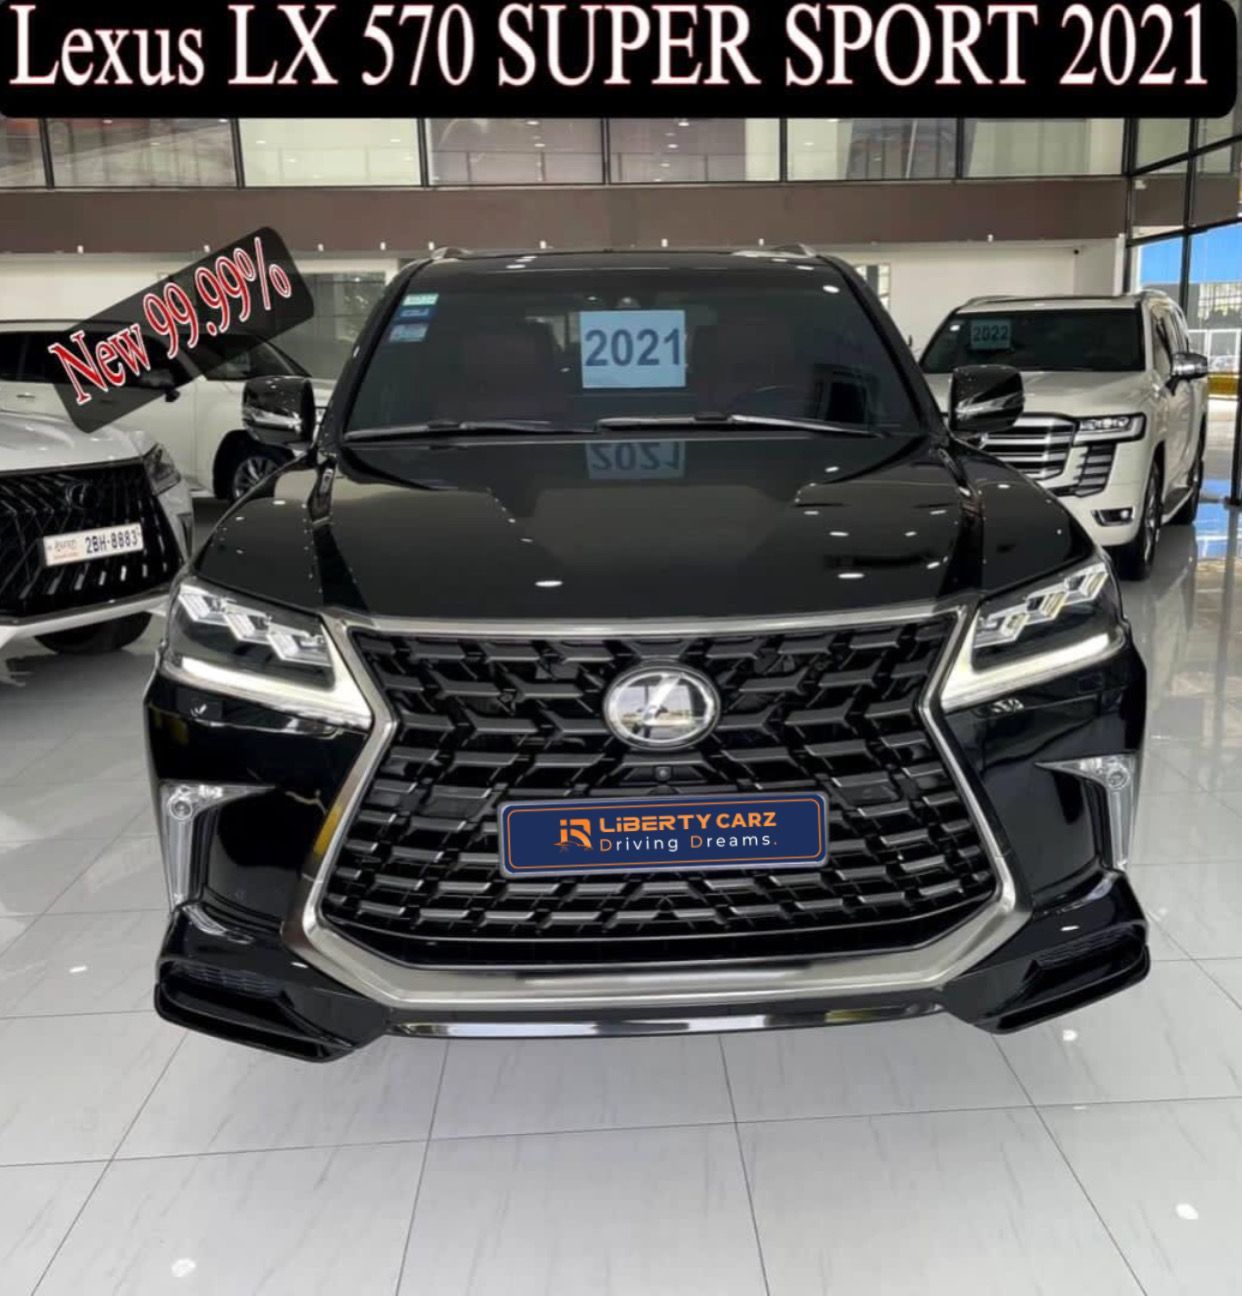 Lexus Super Sport 2021